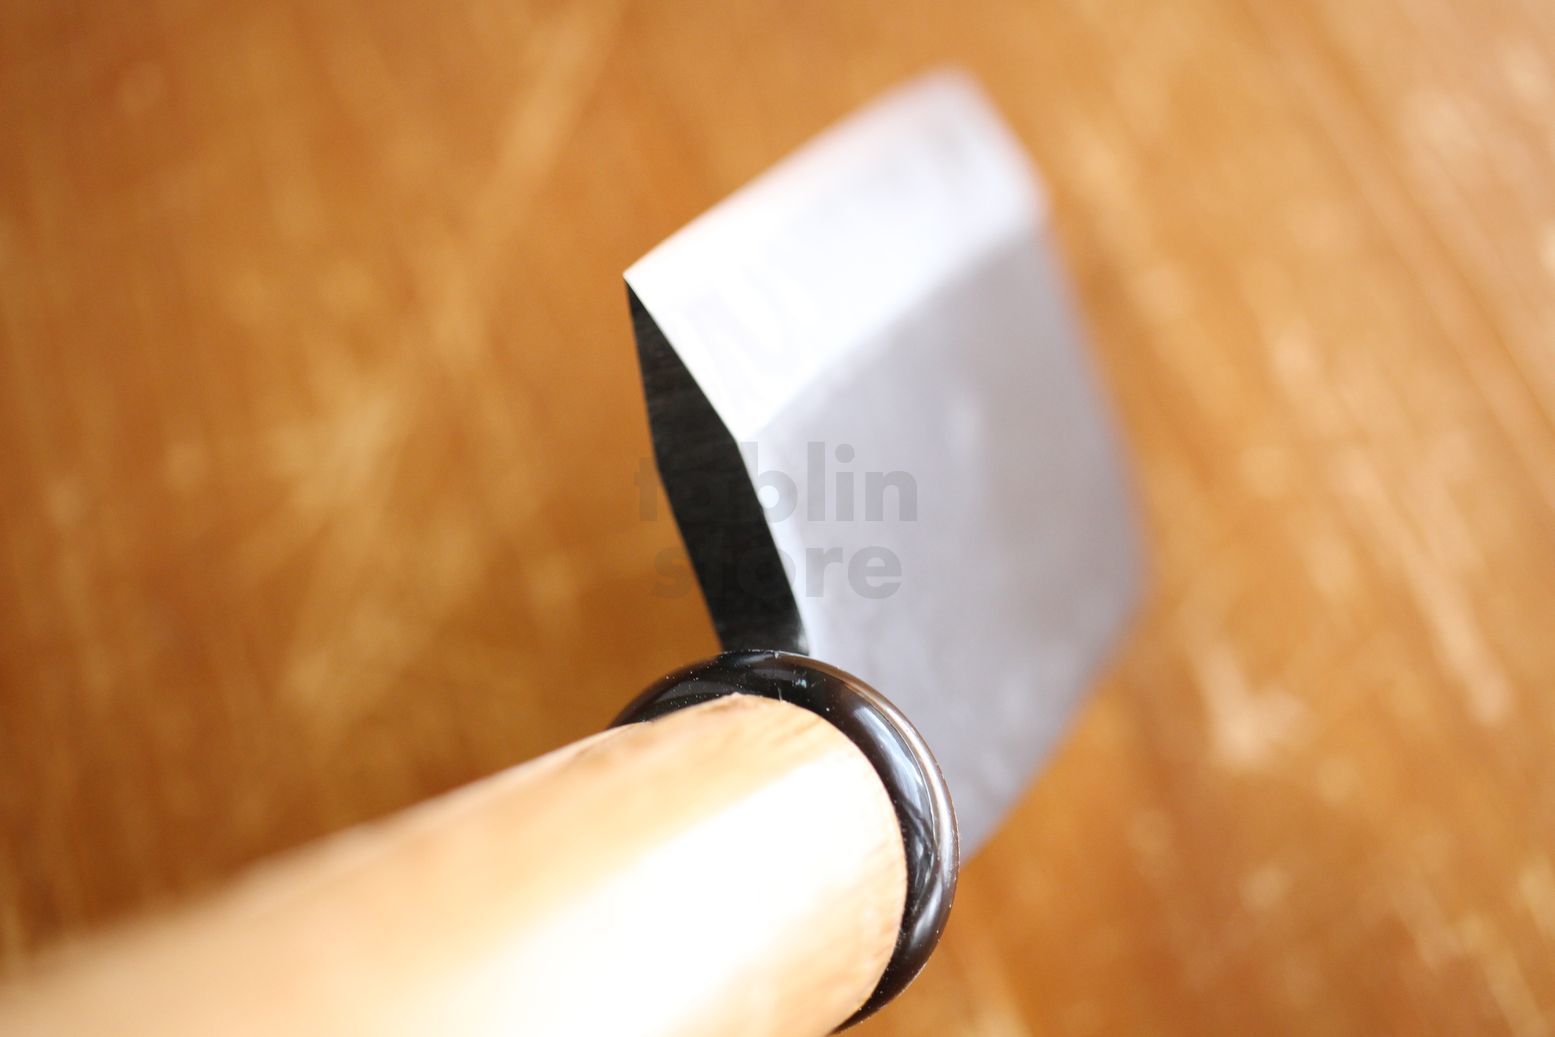 Igarashi Japanese Nata Hatchet knife woodworking sk steel 135mm